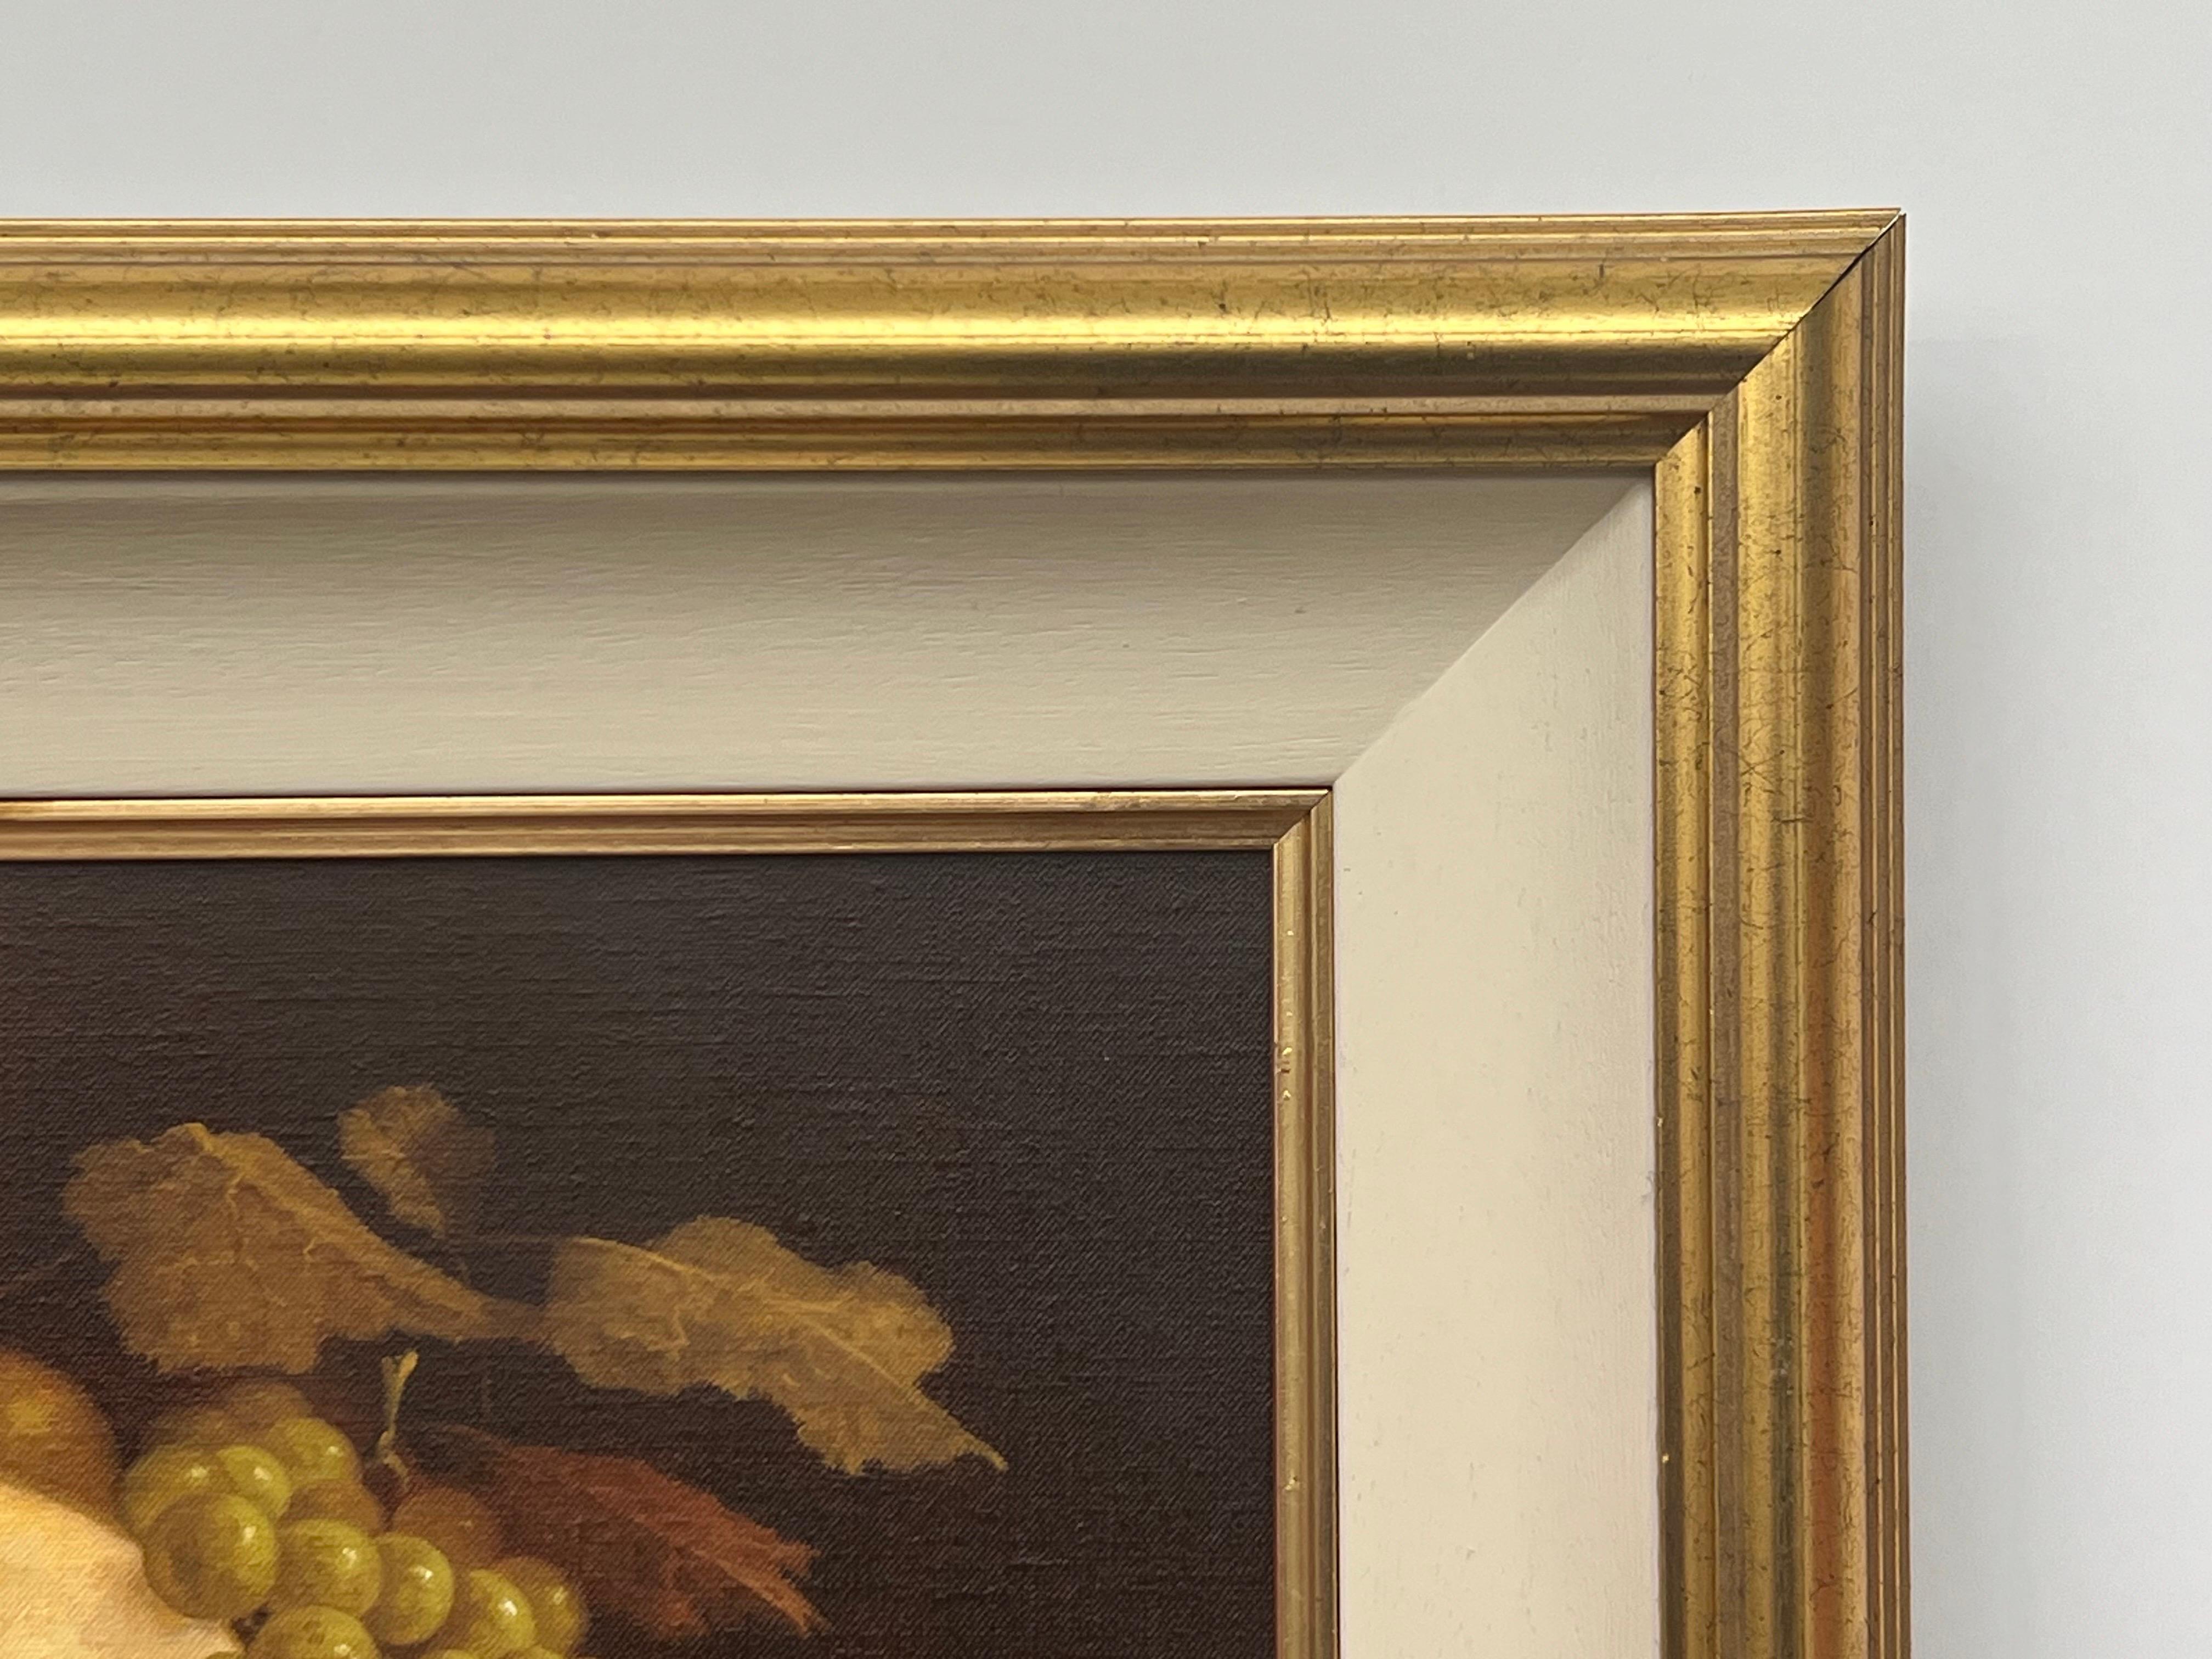 Traditionelles Interieur-Stillleben mit Obst und Kerze von Howard Shingler, einem britischen Künstler des 20. Dieses Original hat eine schöne warme Atmosphäre und wird in einem goldenen Rahmen mit cremefarbenem Einsatz präsentiert.

Kunst misst 14 x